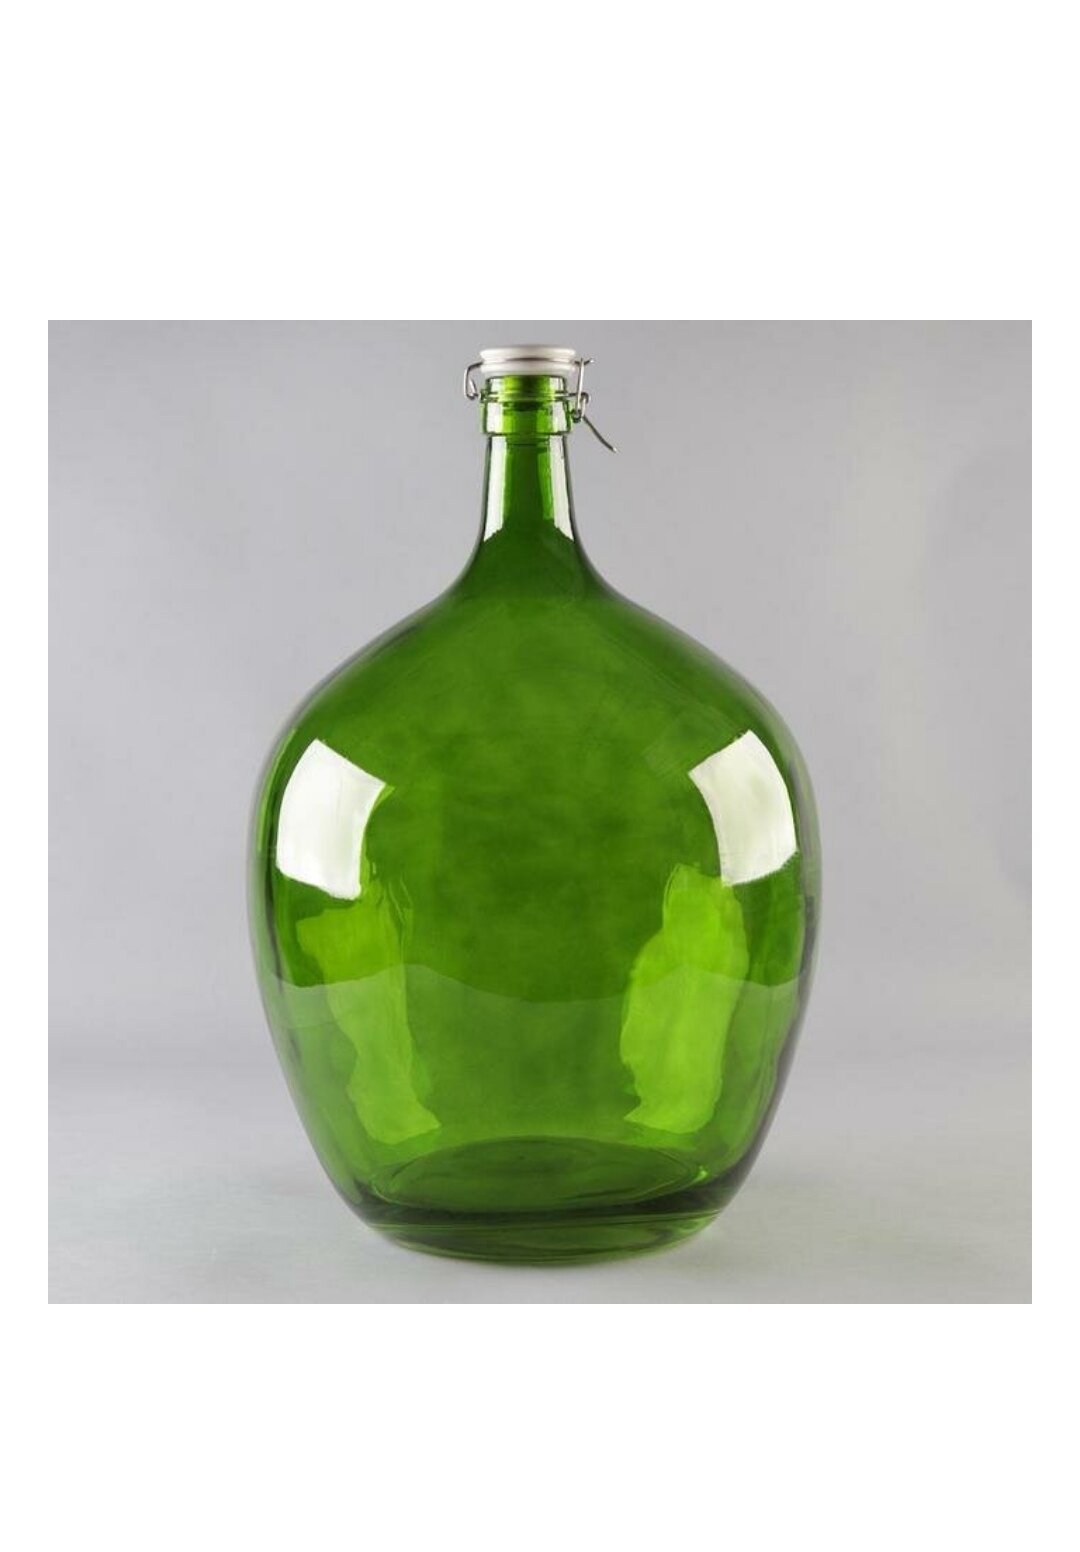 Бутылка 25 литров с бугельной керамической крышкой из зеленого коричневого темного матового стекла